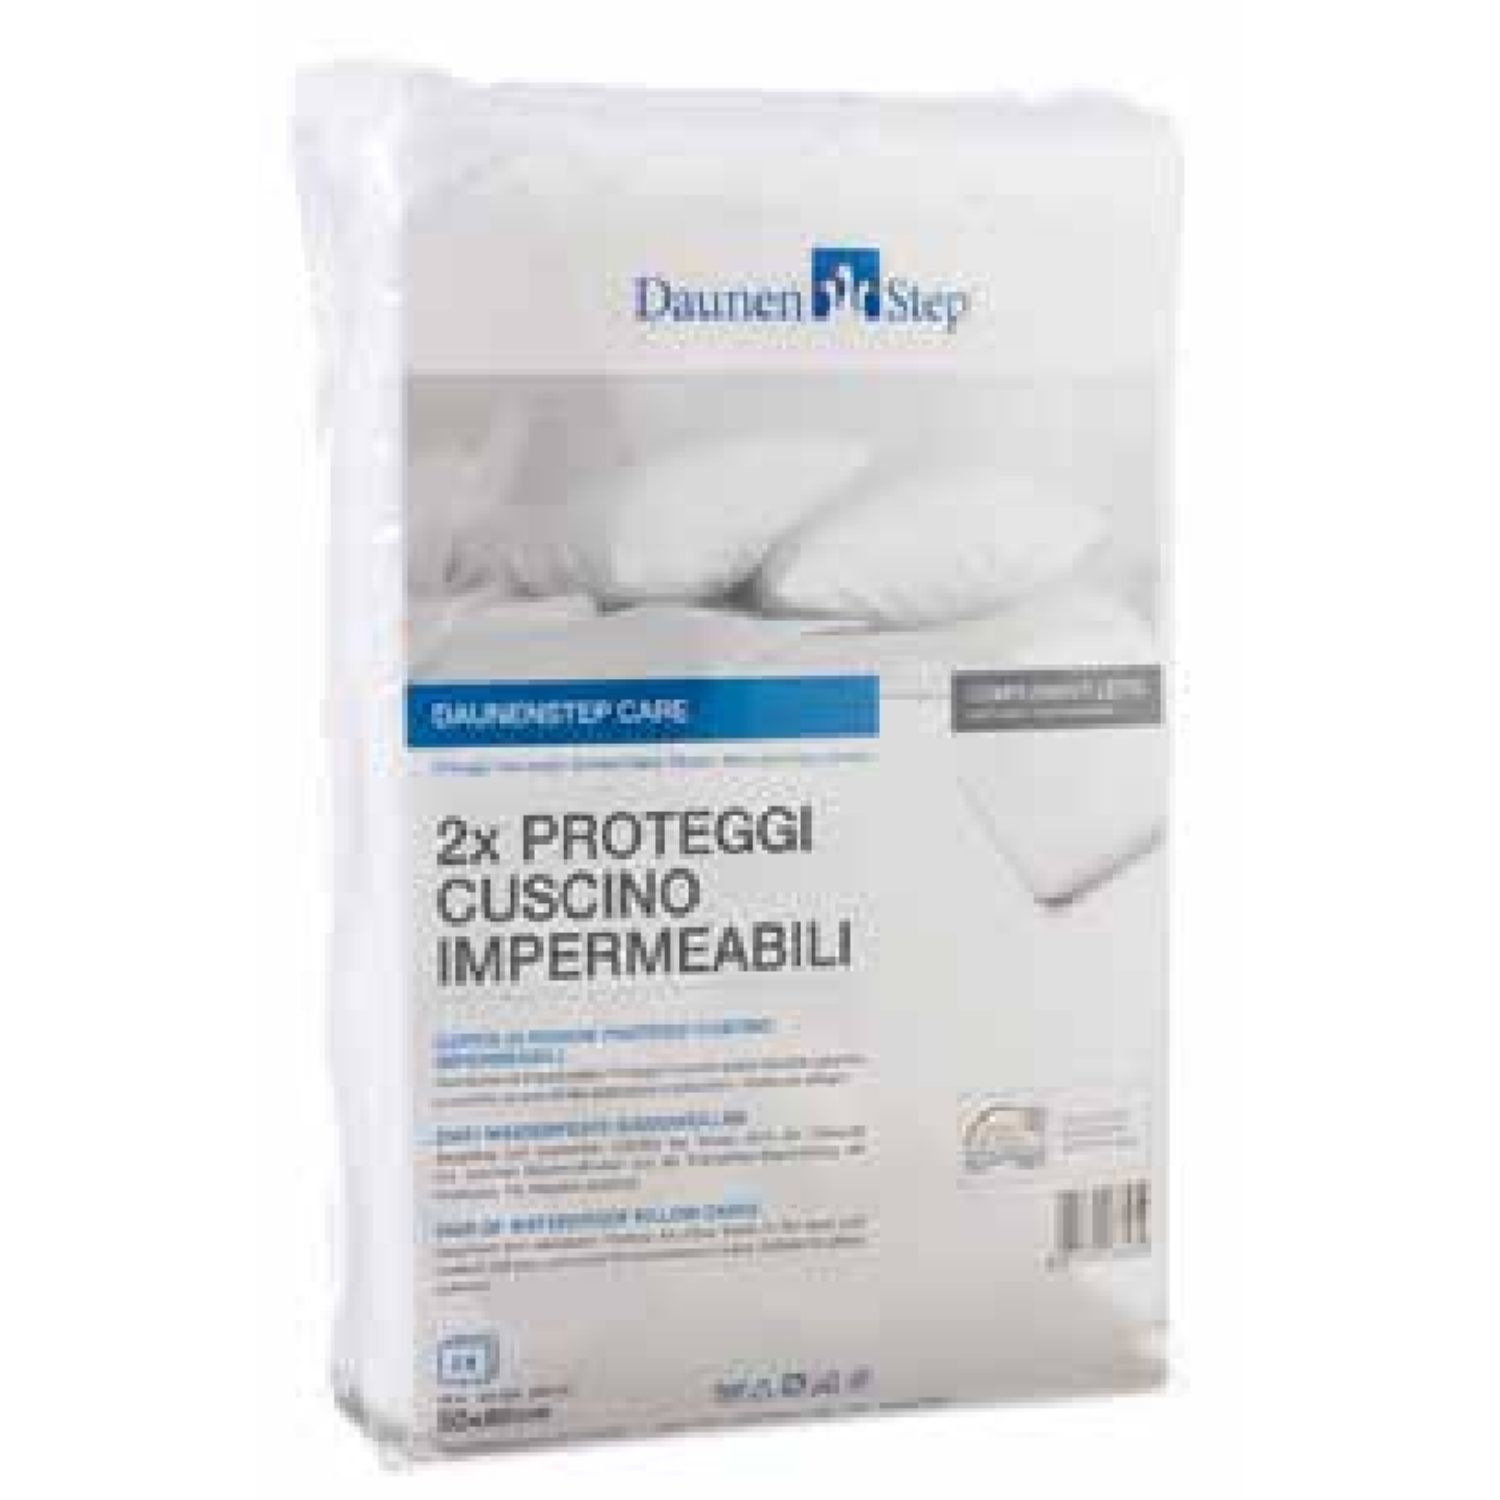 Coppia di federe proteggi cuscino impermeabili Care Protect